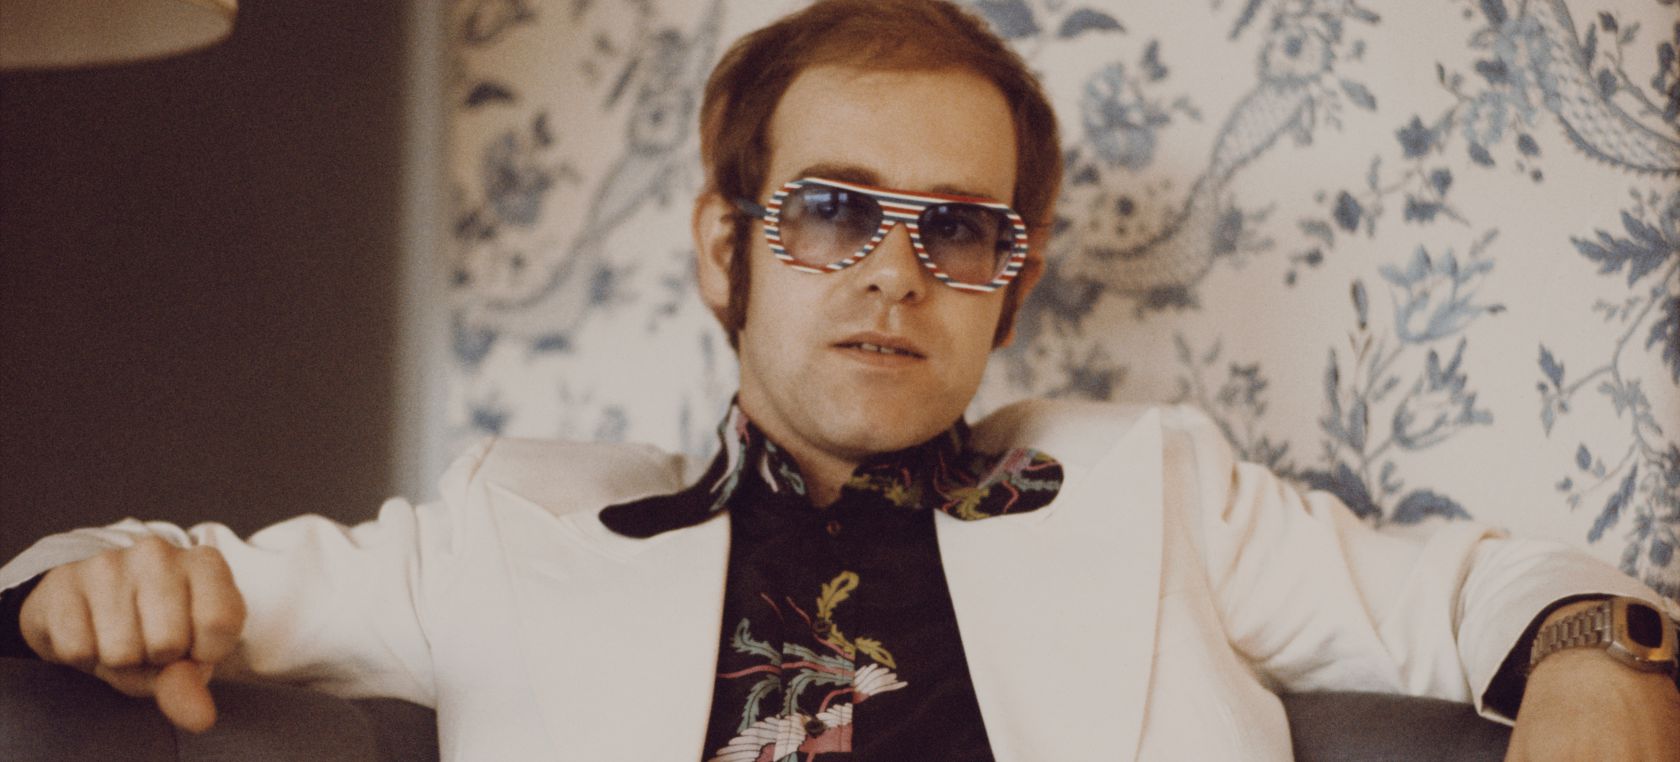 Elton John y la historia de su nombre: “Odiaba Reginald y cuando me convertí en Elton John todo fue genial”